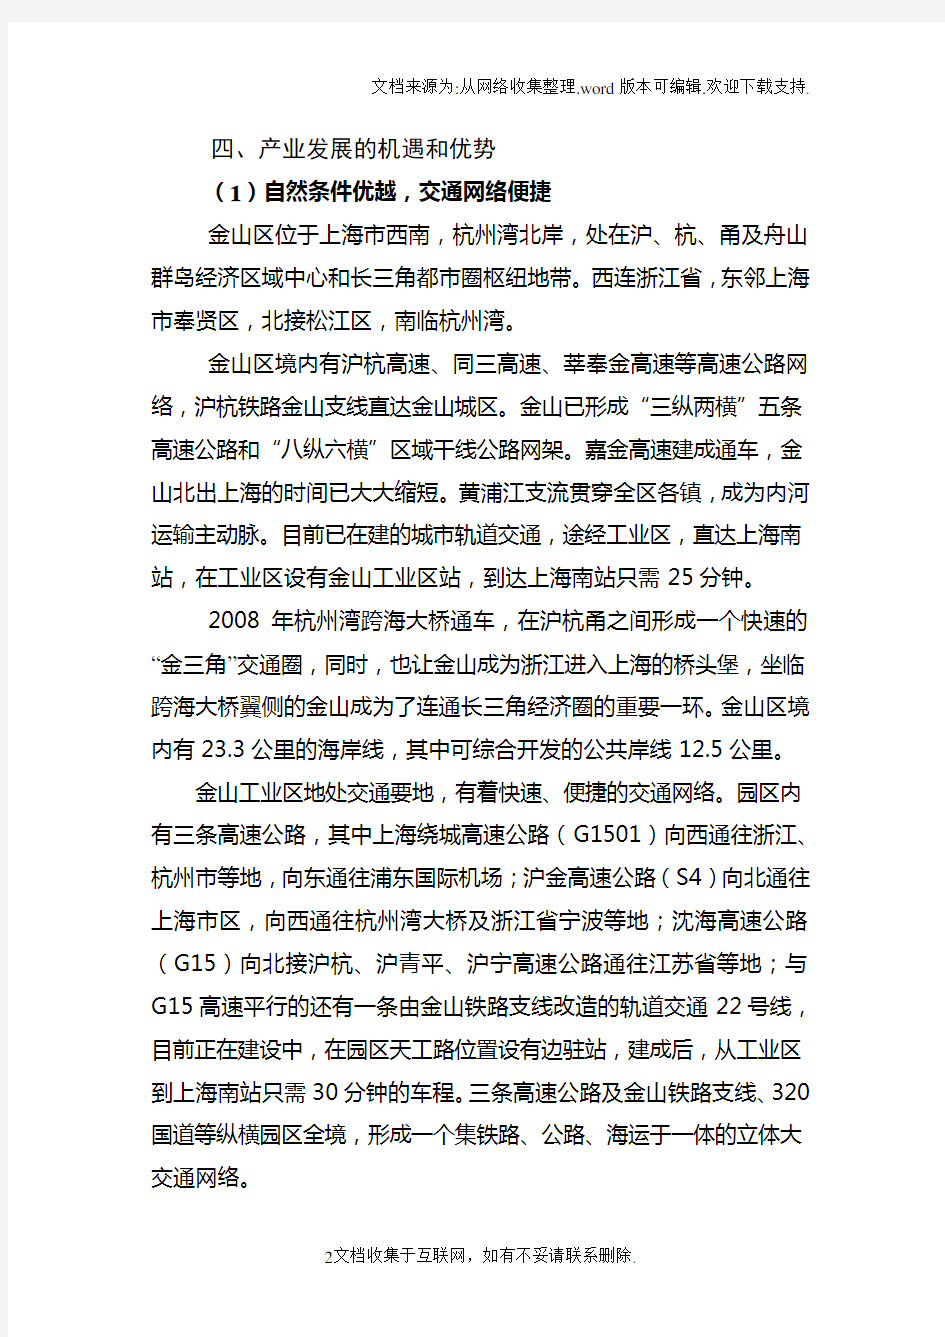 上海金山工业区概况(详细版)